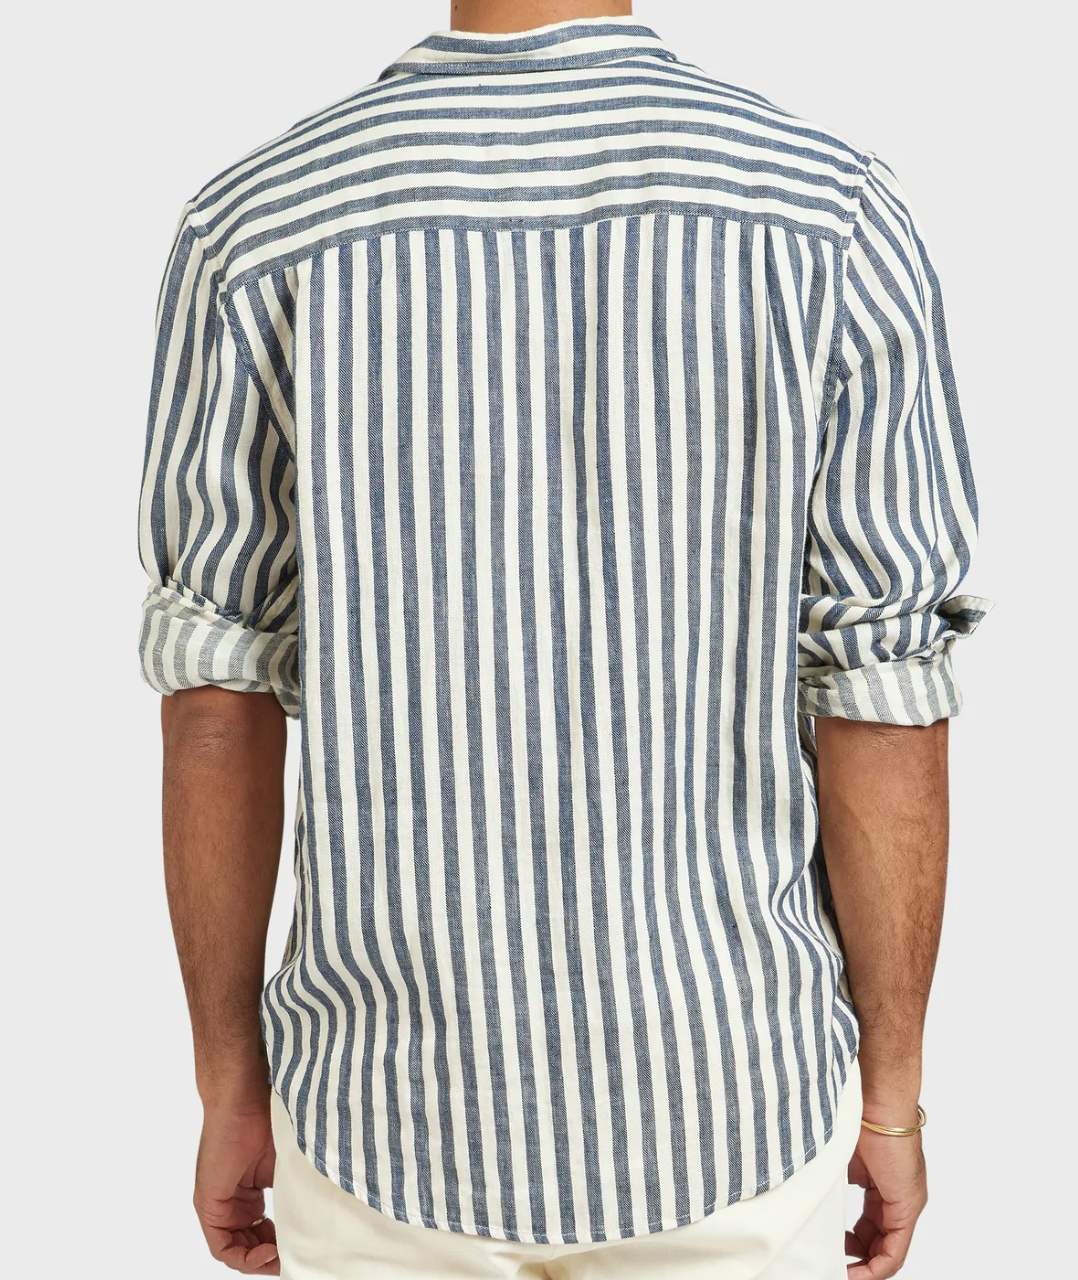 Academy Brand Farrelly Linen Shirt - Mainstreet Clothing